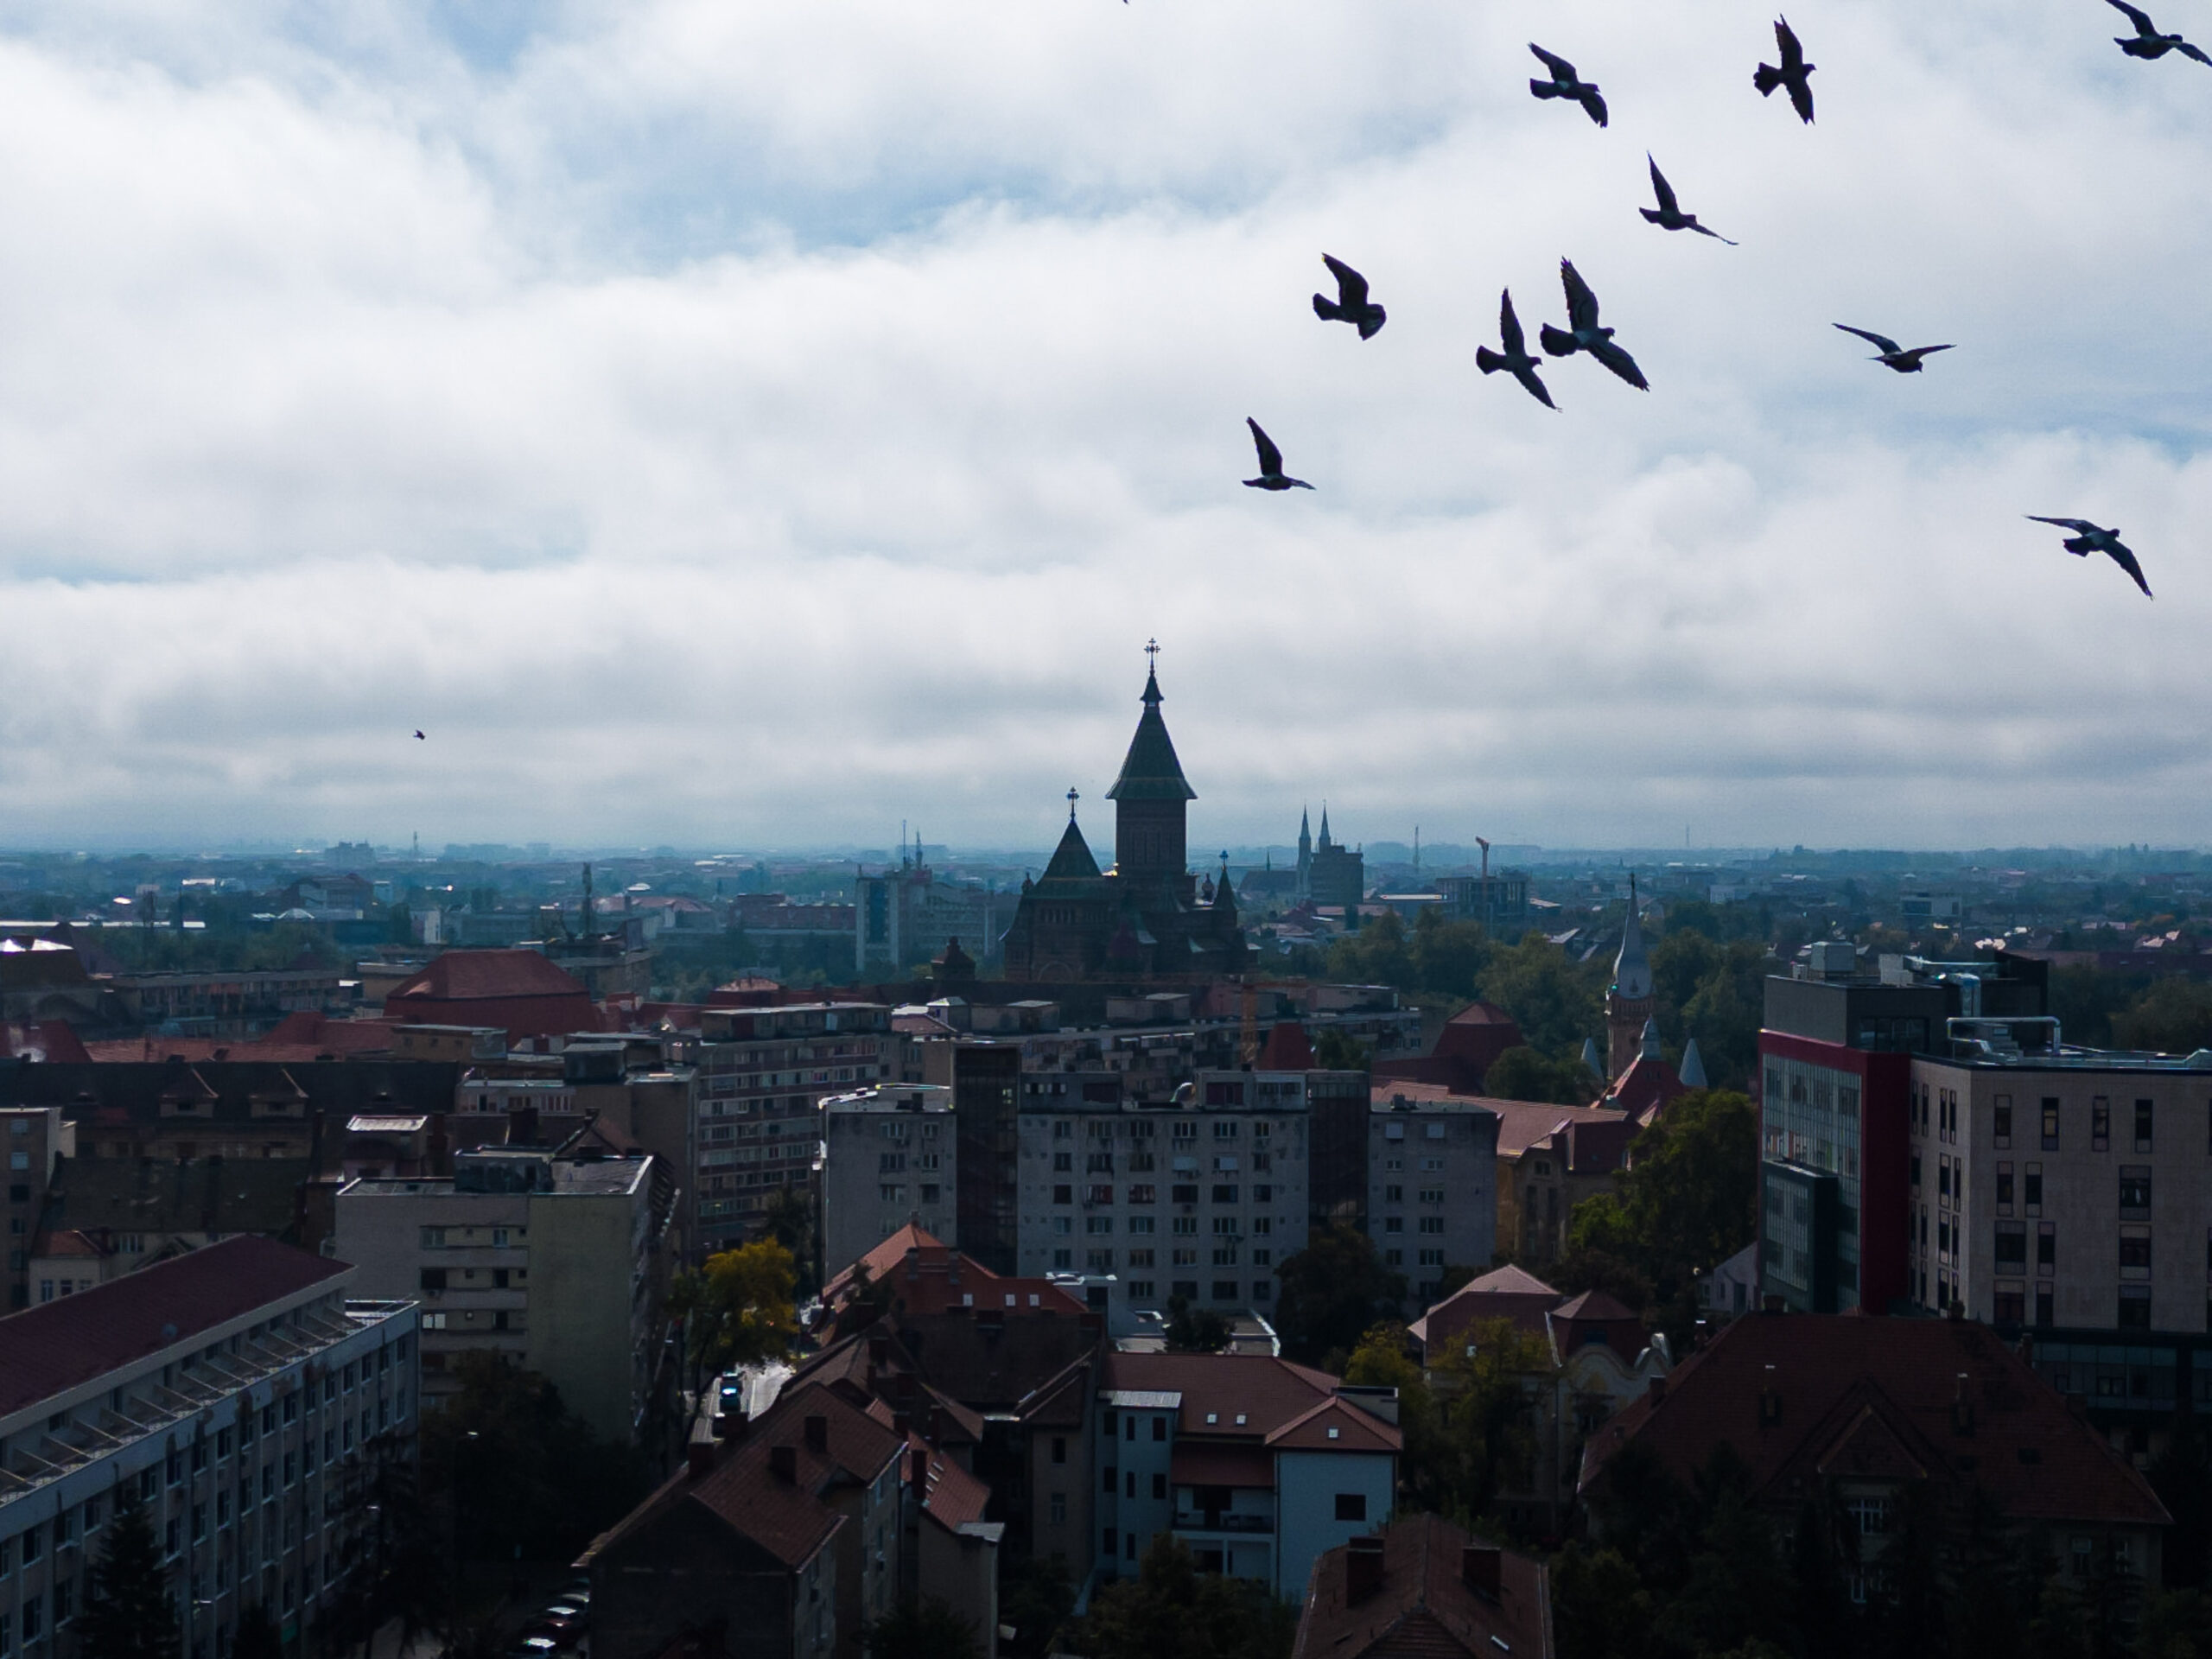 Deschiderea programului Timișoara 2023 – Capitală Europeană a Culturii în război cu HORECA. Primăria a decis închiderea teraselor pentru cele trei zile de sărbătoare